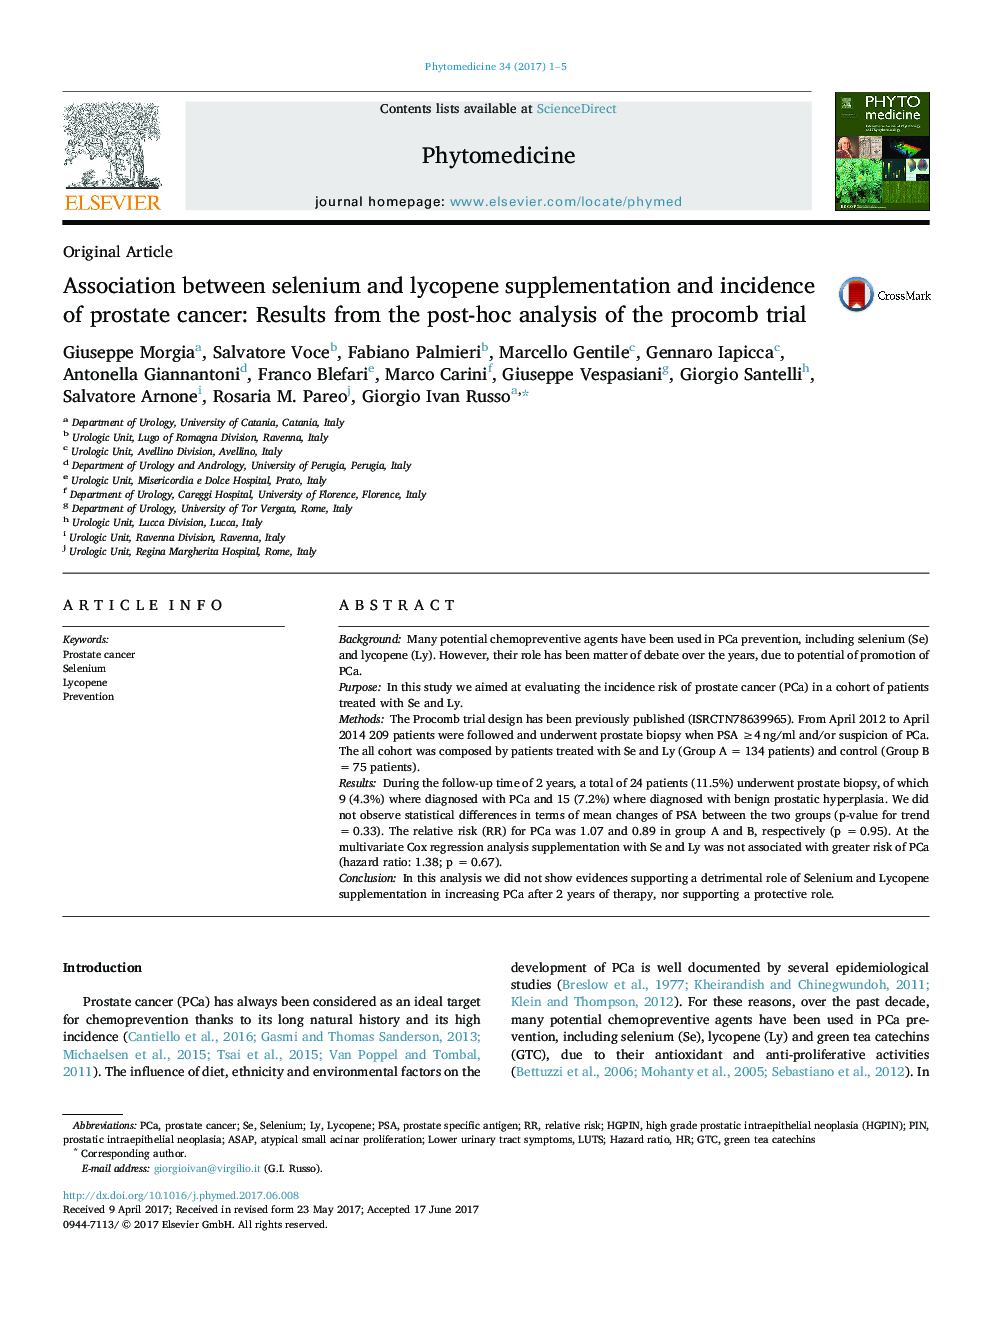 ارتباط بین مکمل سلنیوم و لیکوپن و بروز سرطان پروستات: نتایج حاصل از آنالیز بعد از آزمایش پرونک 